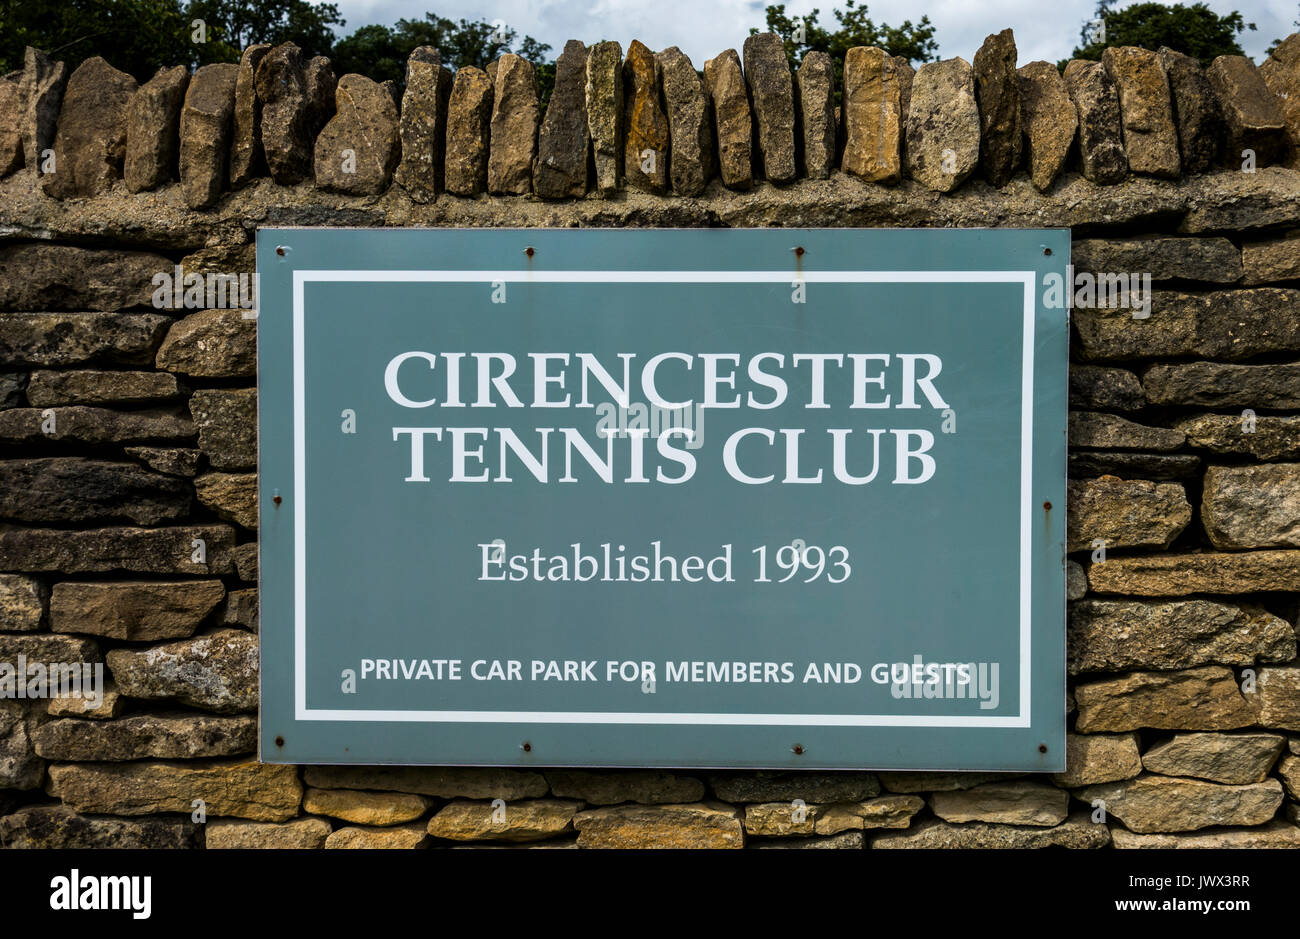 Cirencester Tennis Club anmelden, um eine Mauer aus Stein auf der Bathurst Immobilien angebracht. Cirencester Gloucestershire, England, UK. Stockfoto